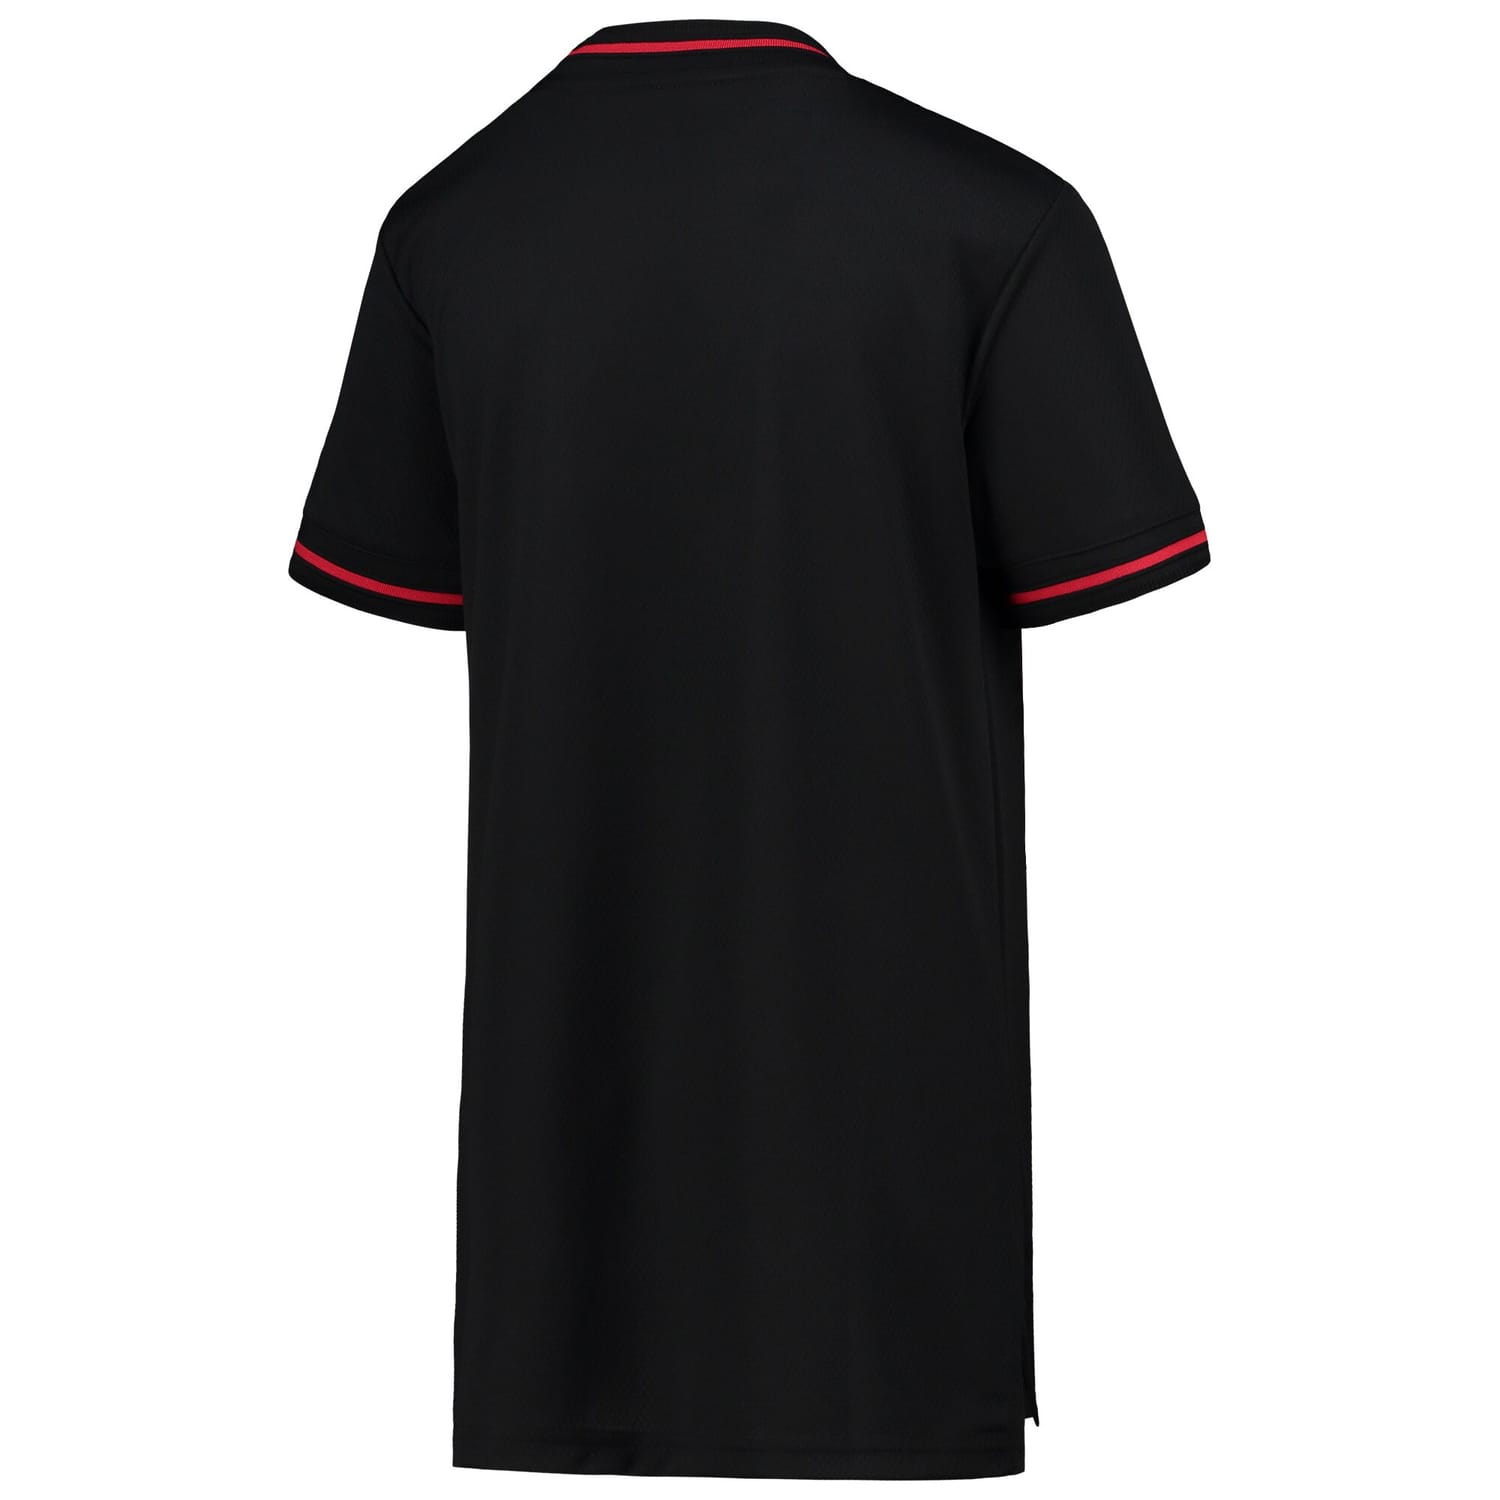 Belgium National Team Jersey Shirt Black 2022 for Women